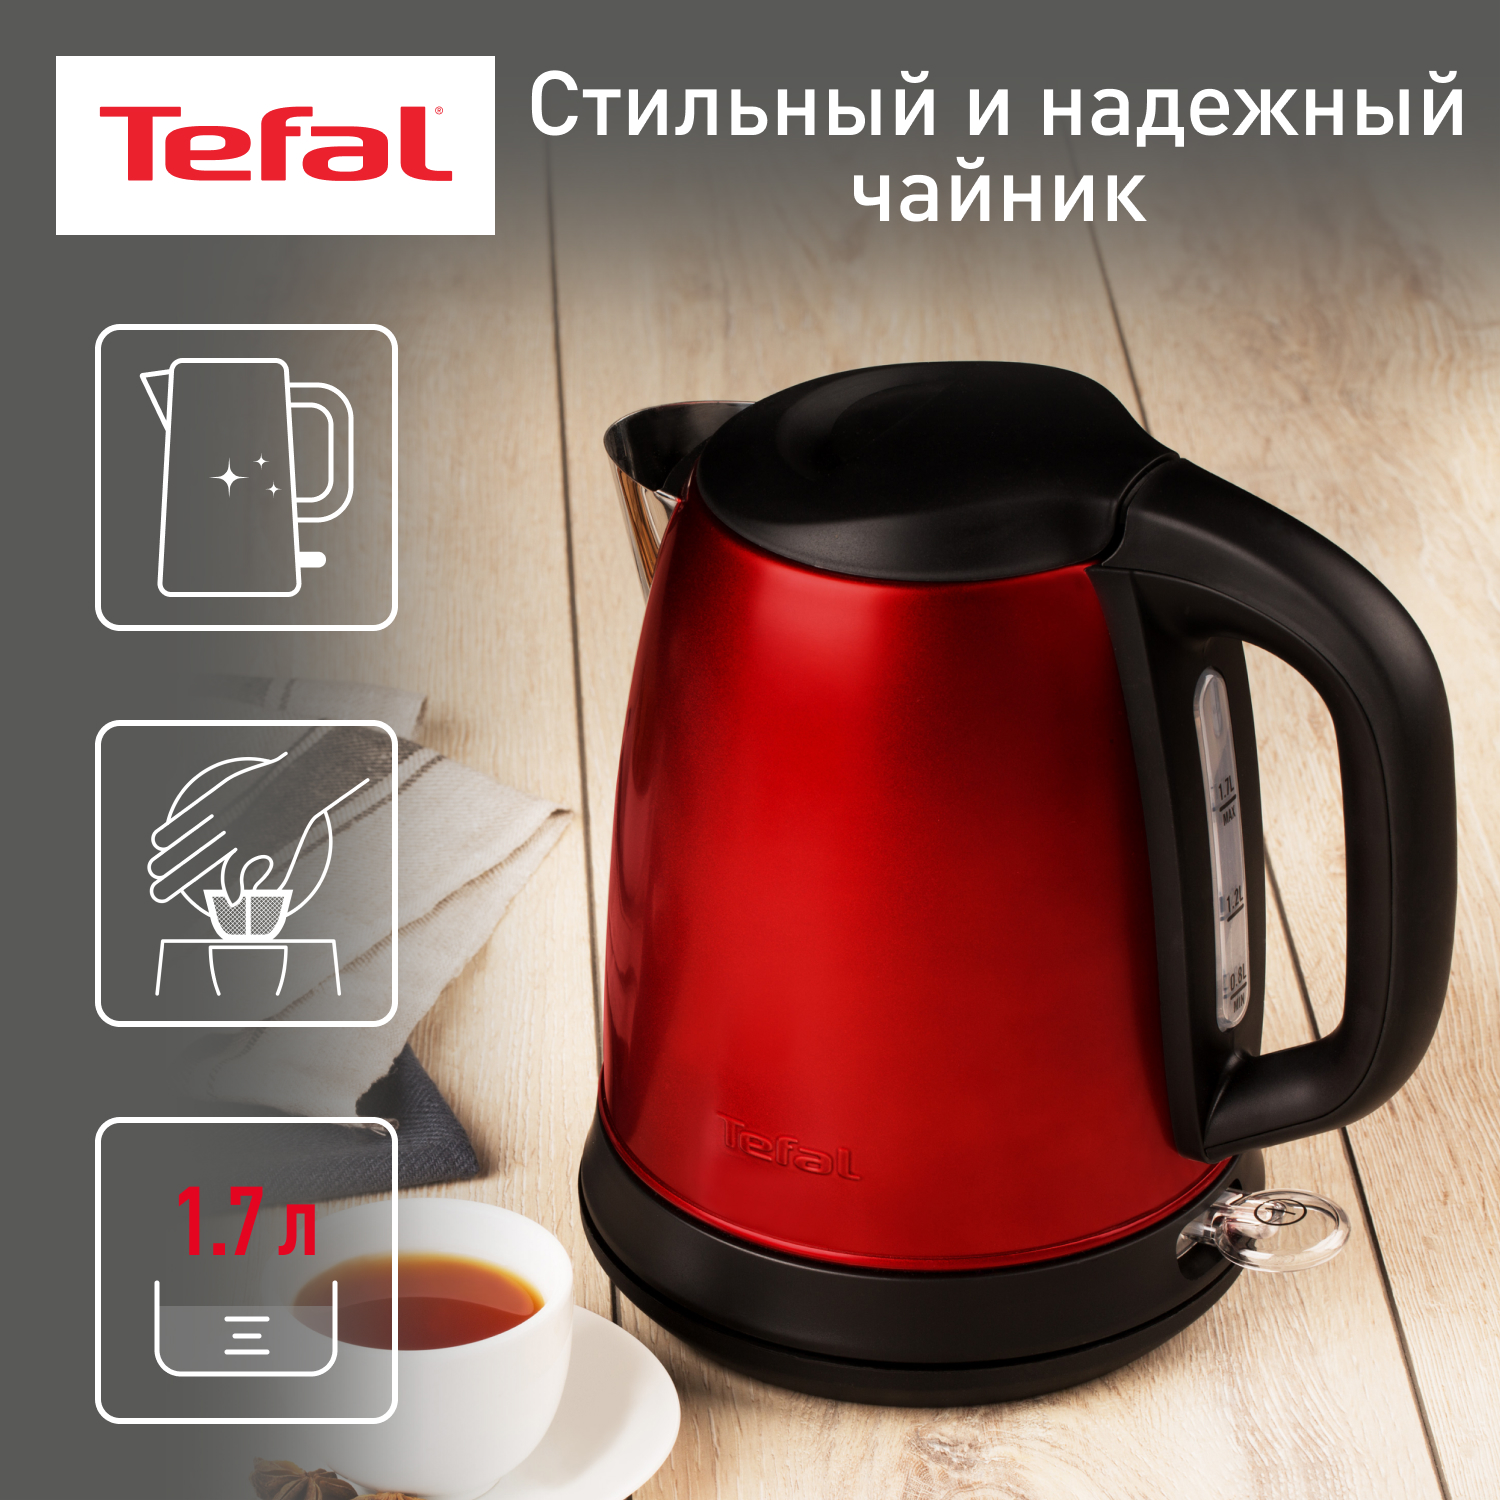 Чайник электрический Tefal Confidence KI270530, 1.7 л, красный/черный чайник металлический bekker bk s642 3 л